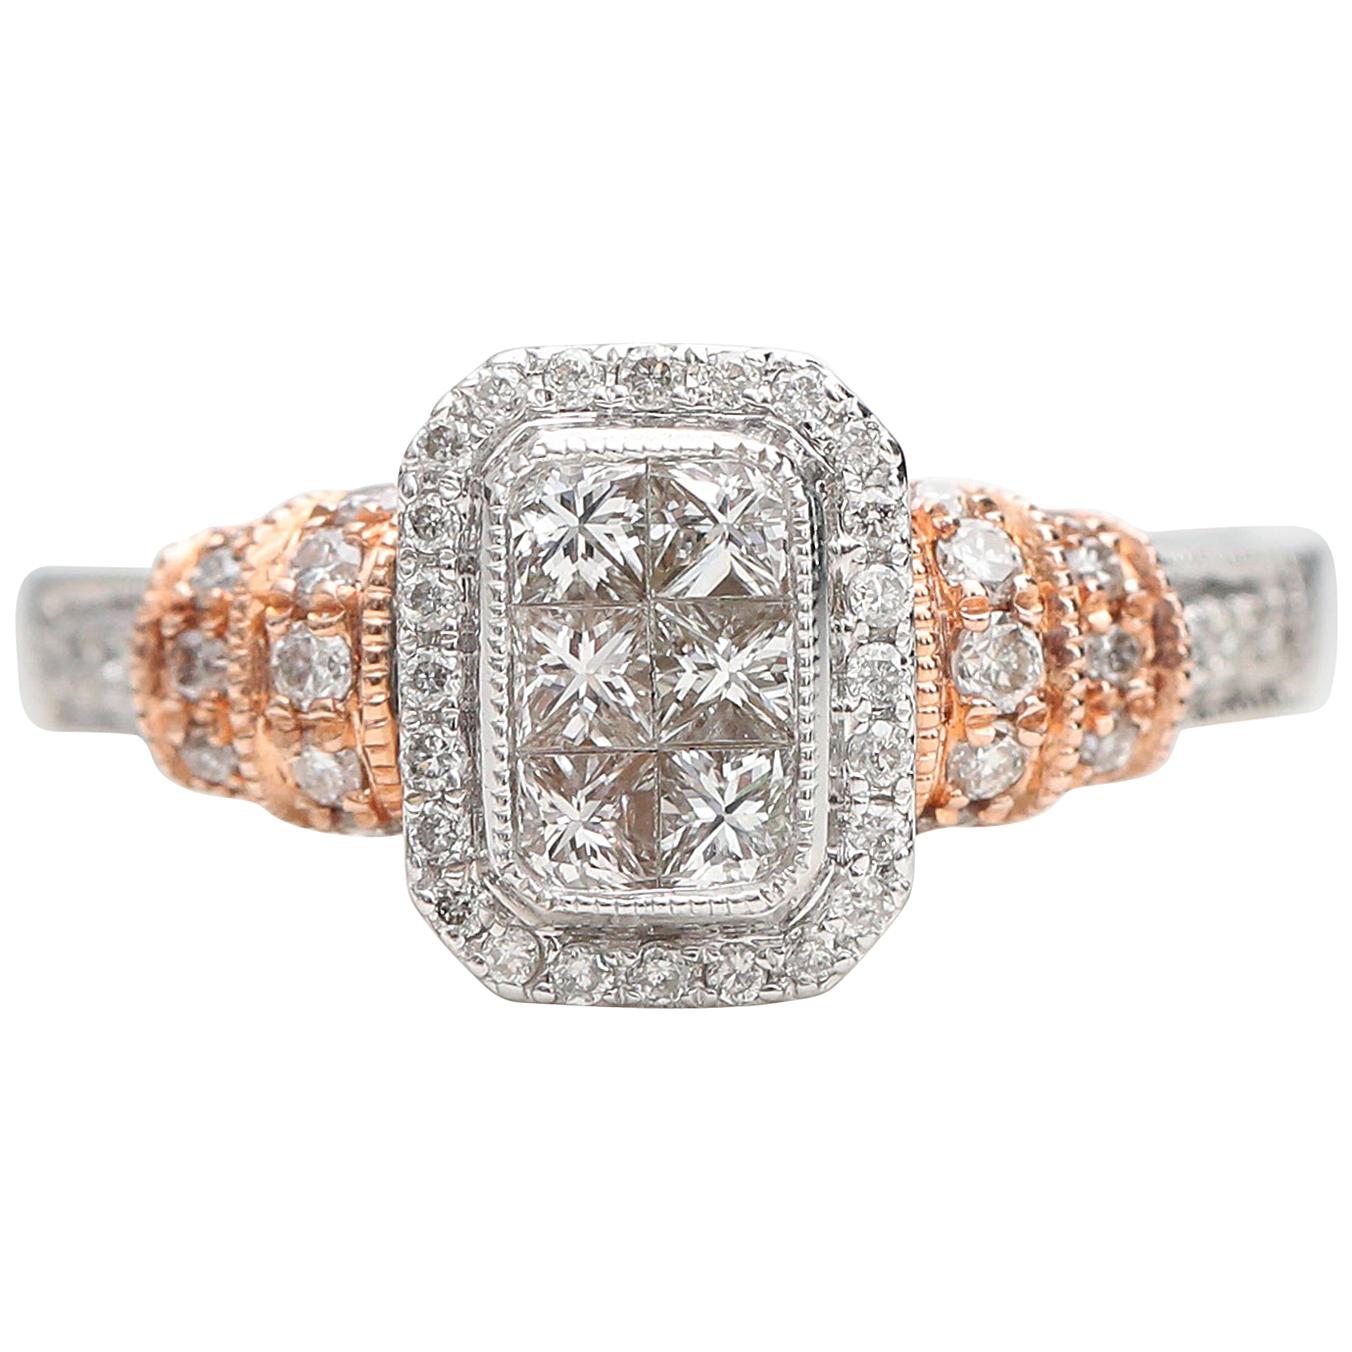 1 Carat Diamond Engagement Ring 14 Karat Two-Tone White and Rose Gold